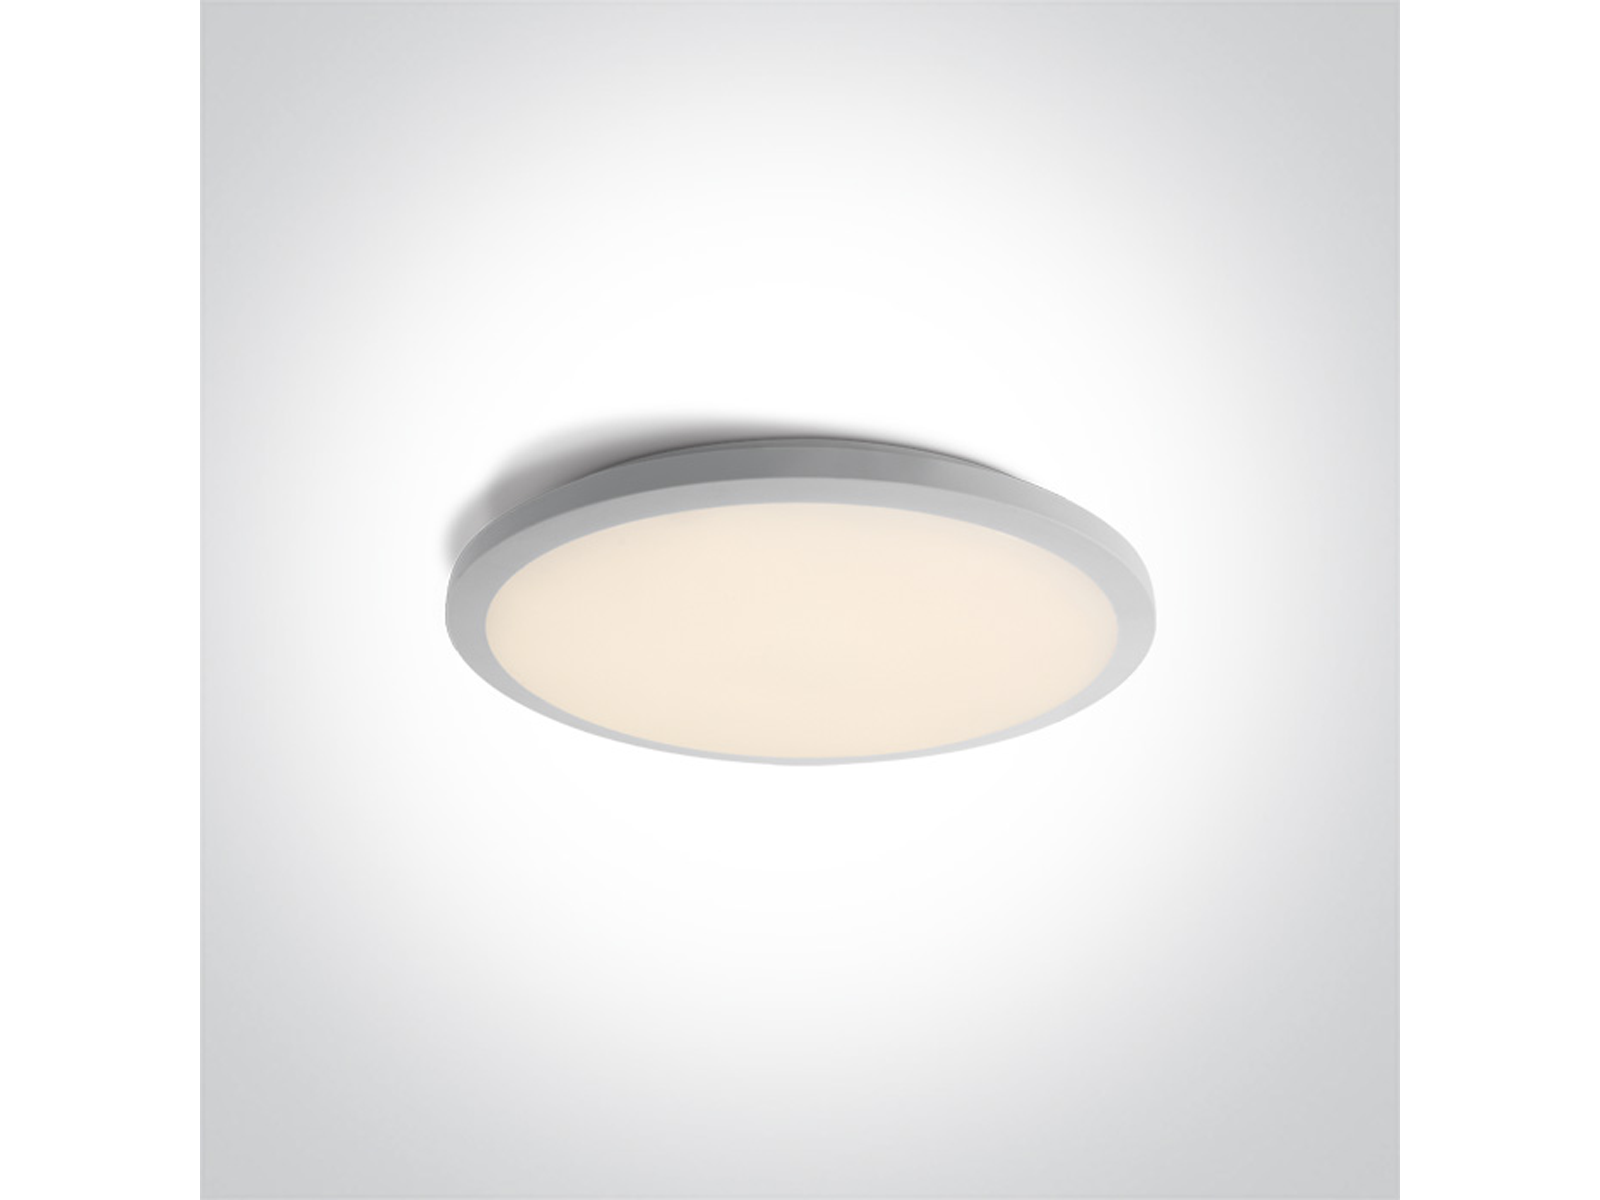 Stropní LED svítidlo slim, bílé, 24W, 3000K, ø38cm, IP20